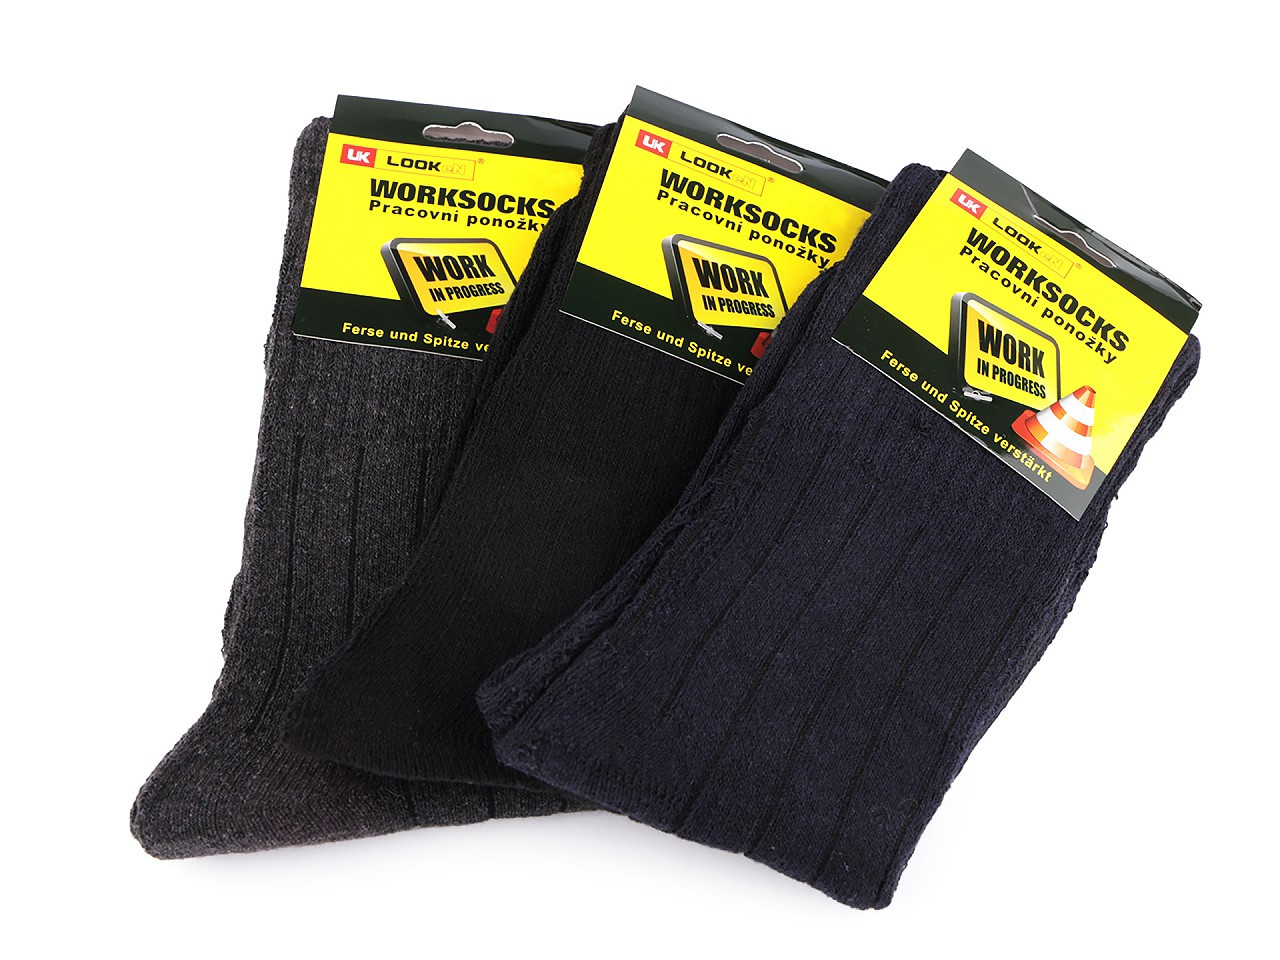 Pánské bavlněné ponožky pracovní, barva 4 (vel. 43-46) mix proužky